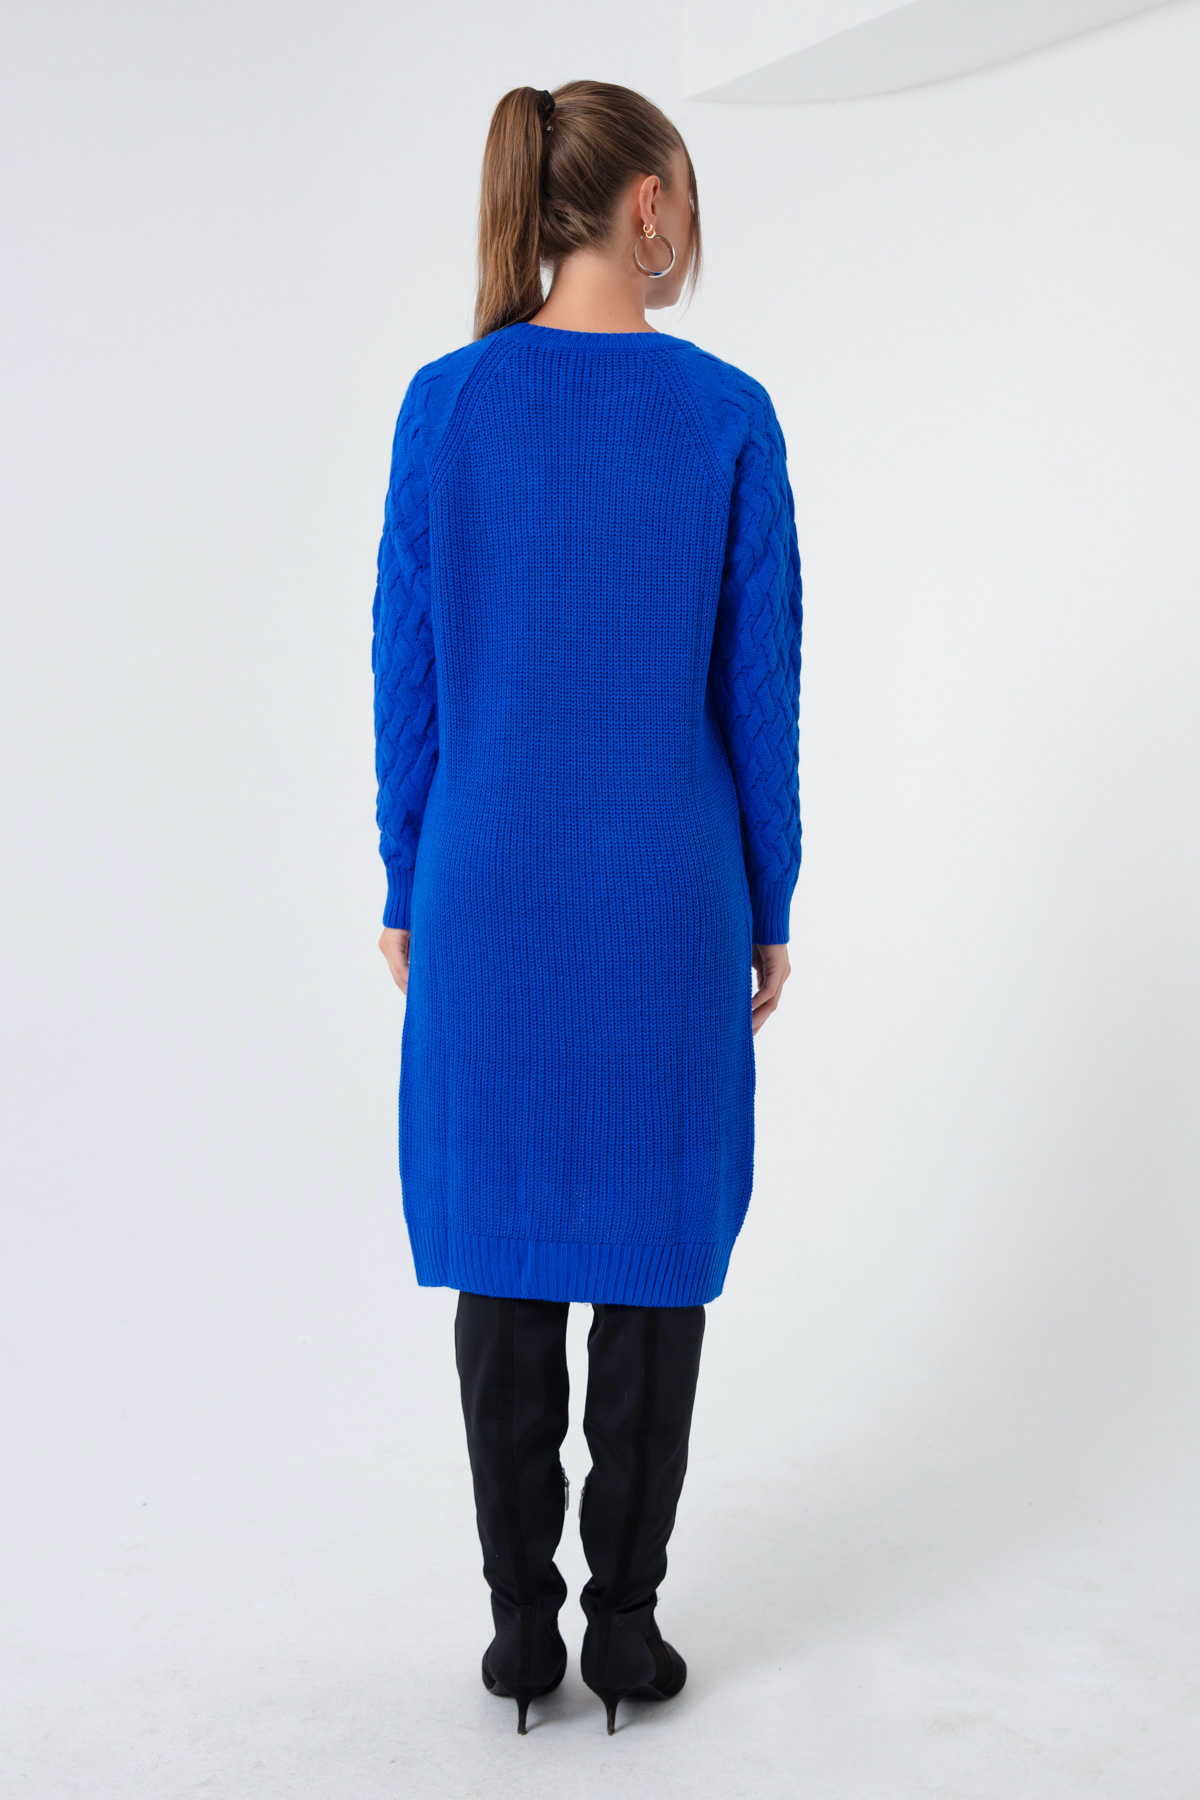 Women's Blue Italian Sleeve Dress